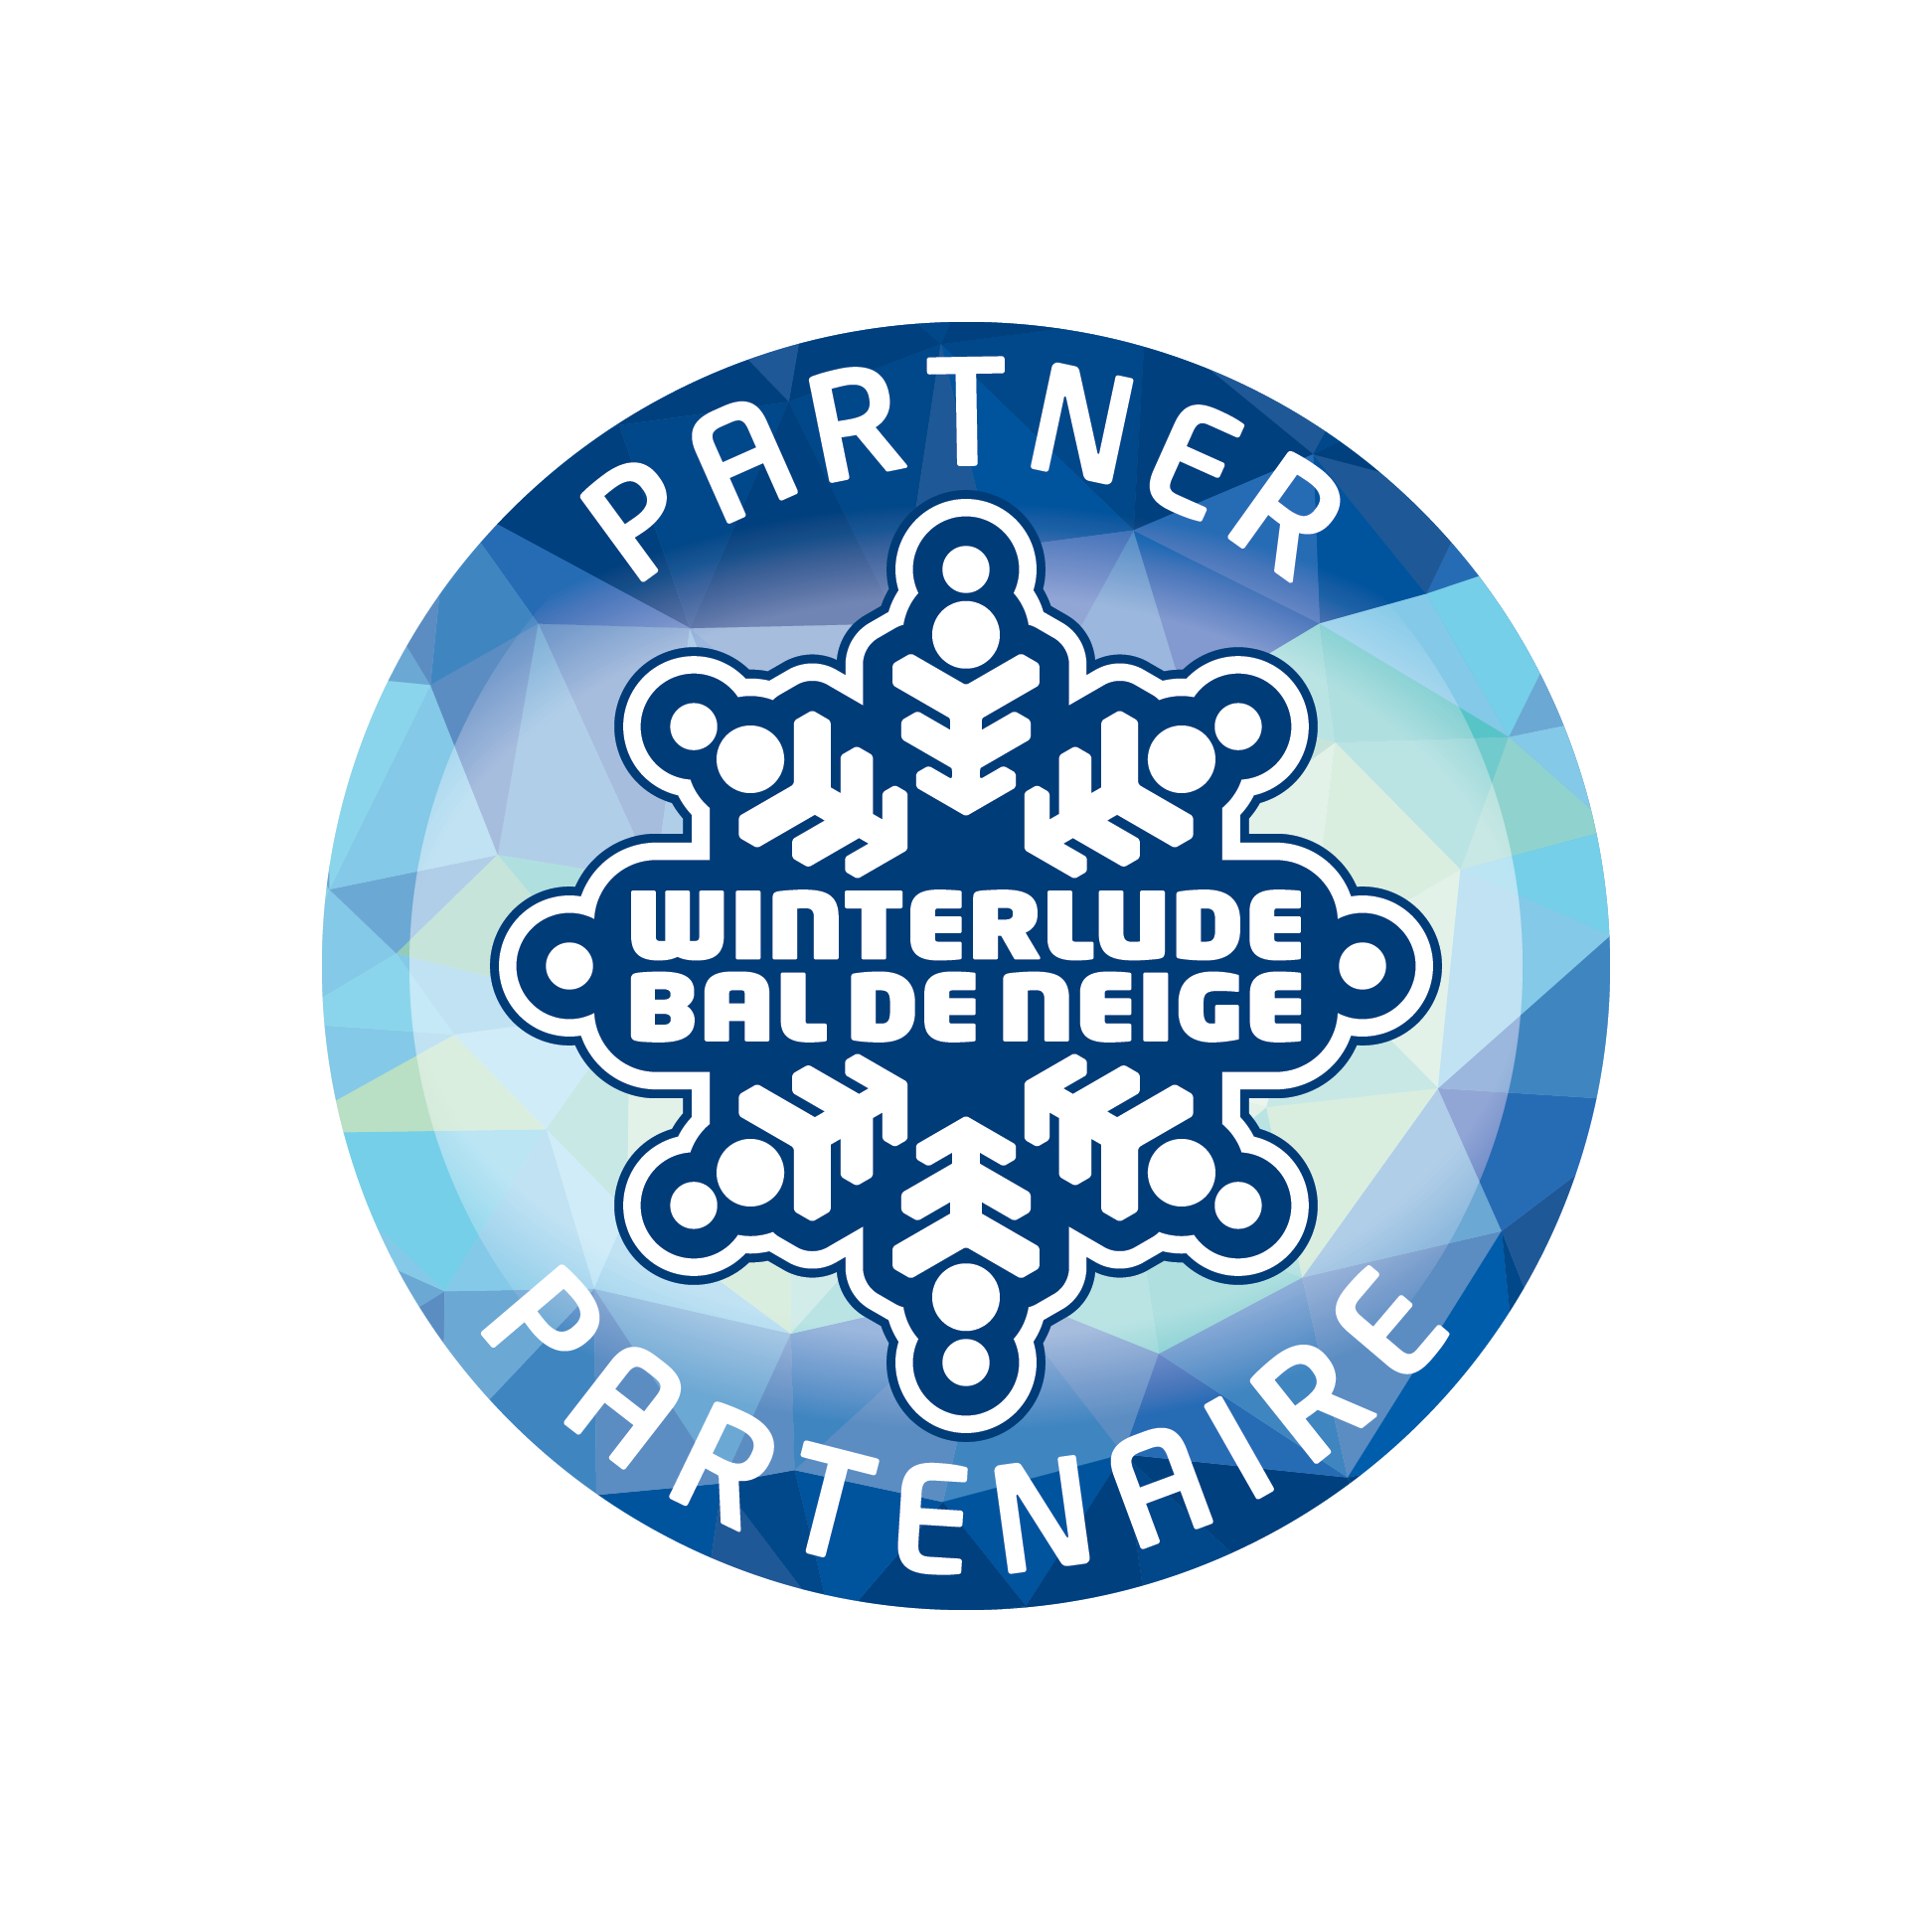 Blue circular logo with a snowflake